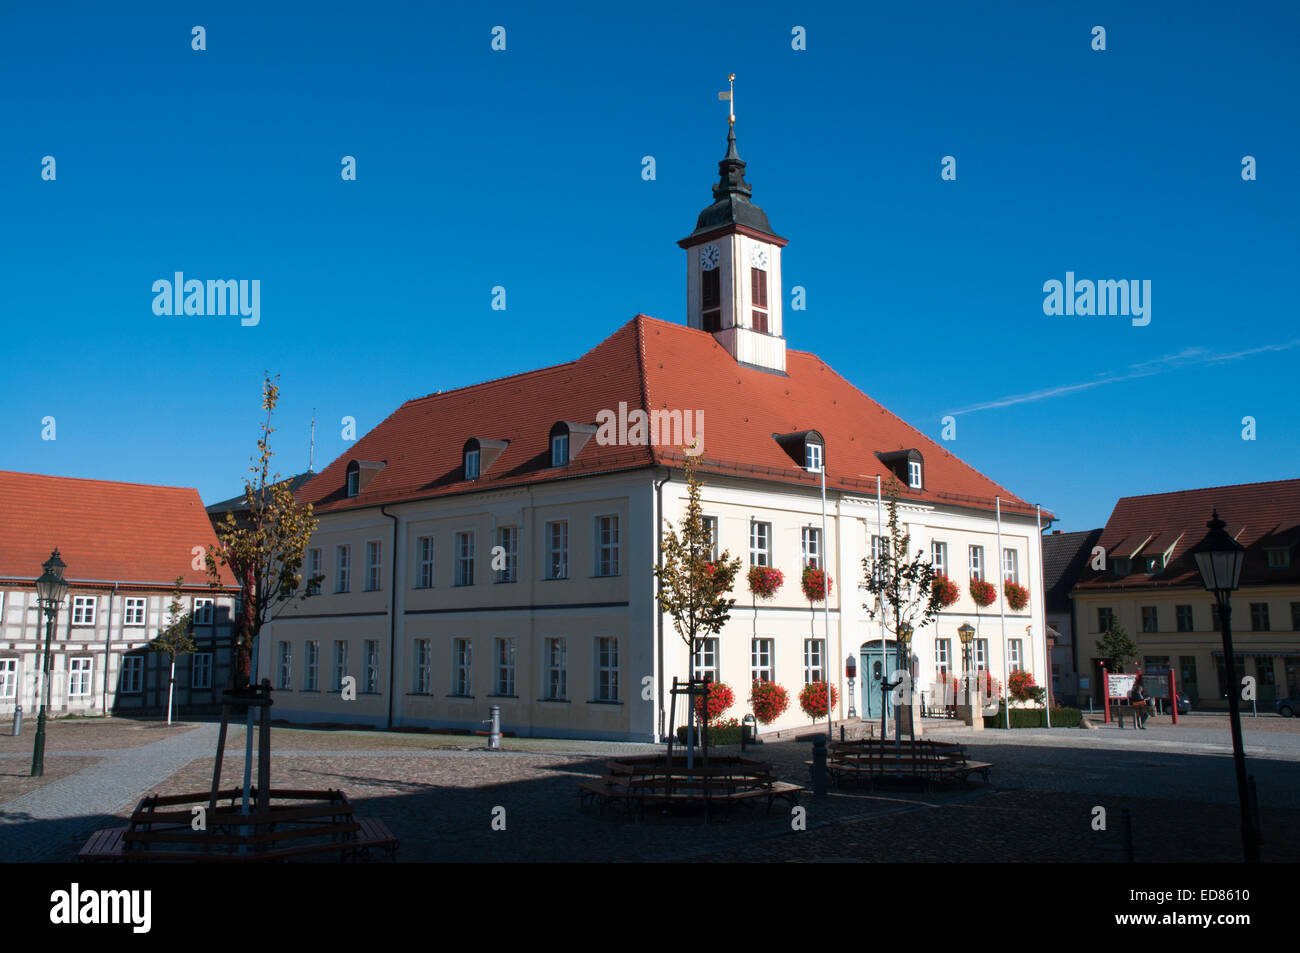 Angermuende è una piccola città nel nord-est della Germania con alcuni edifici storici come il municipio. Angermünde ist eine kleine St Foto Stock